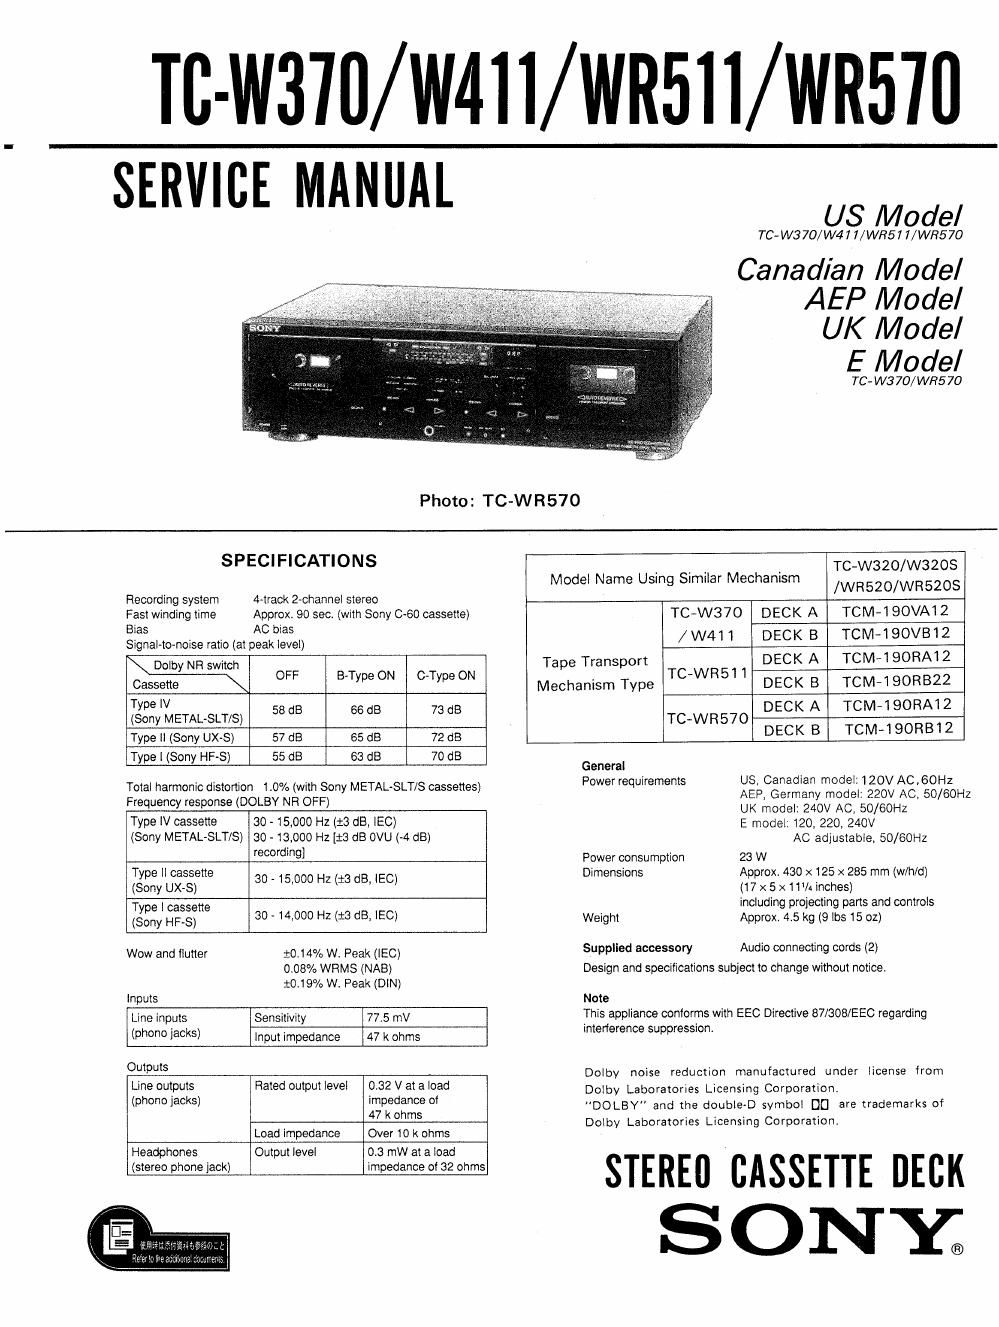 sony tc w 370 service manual